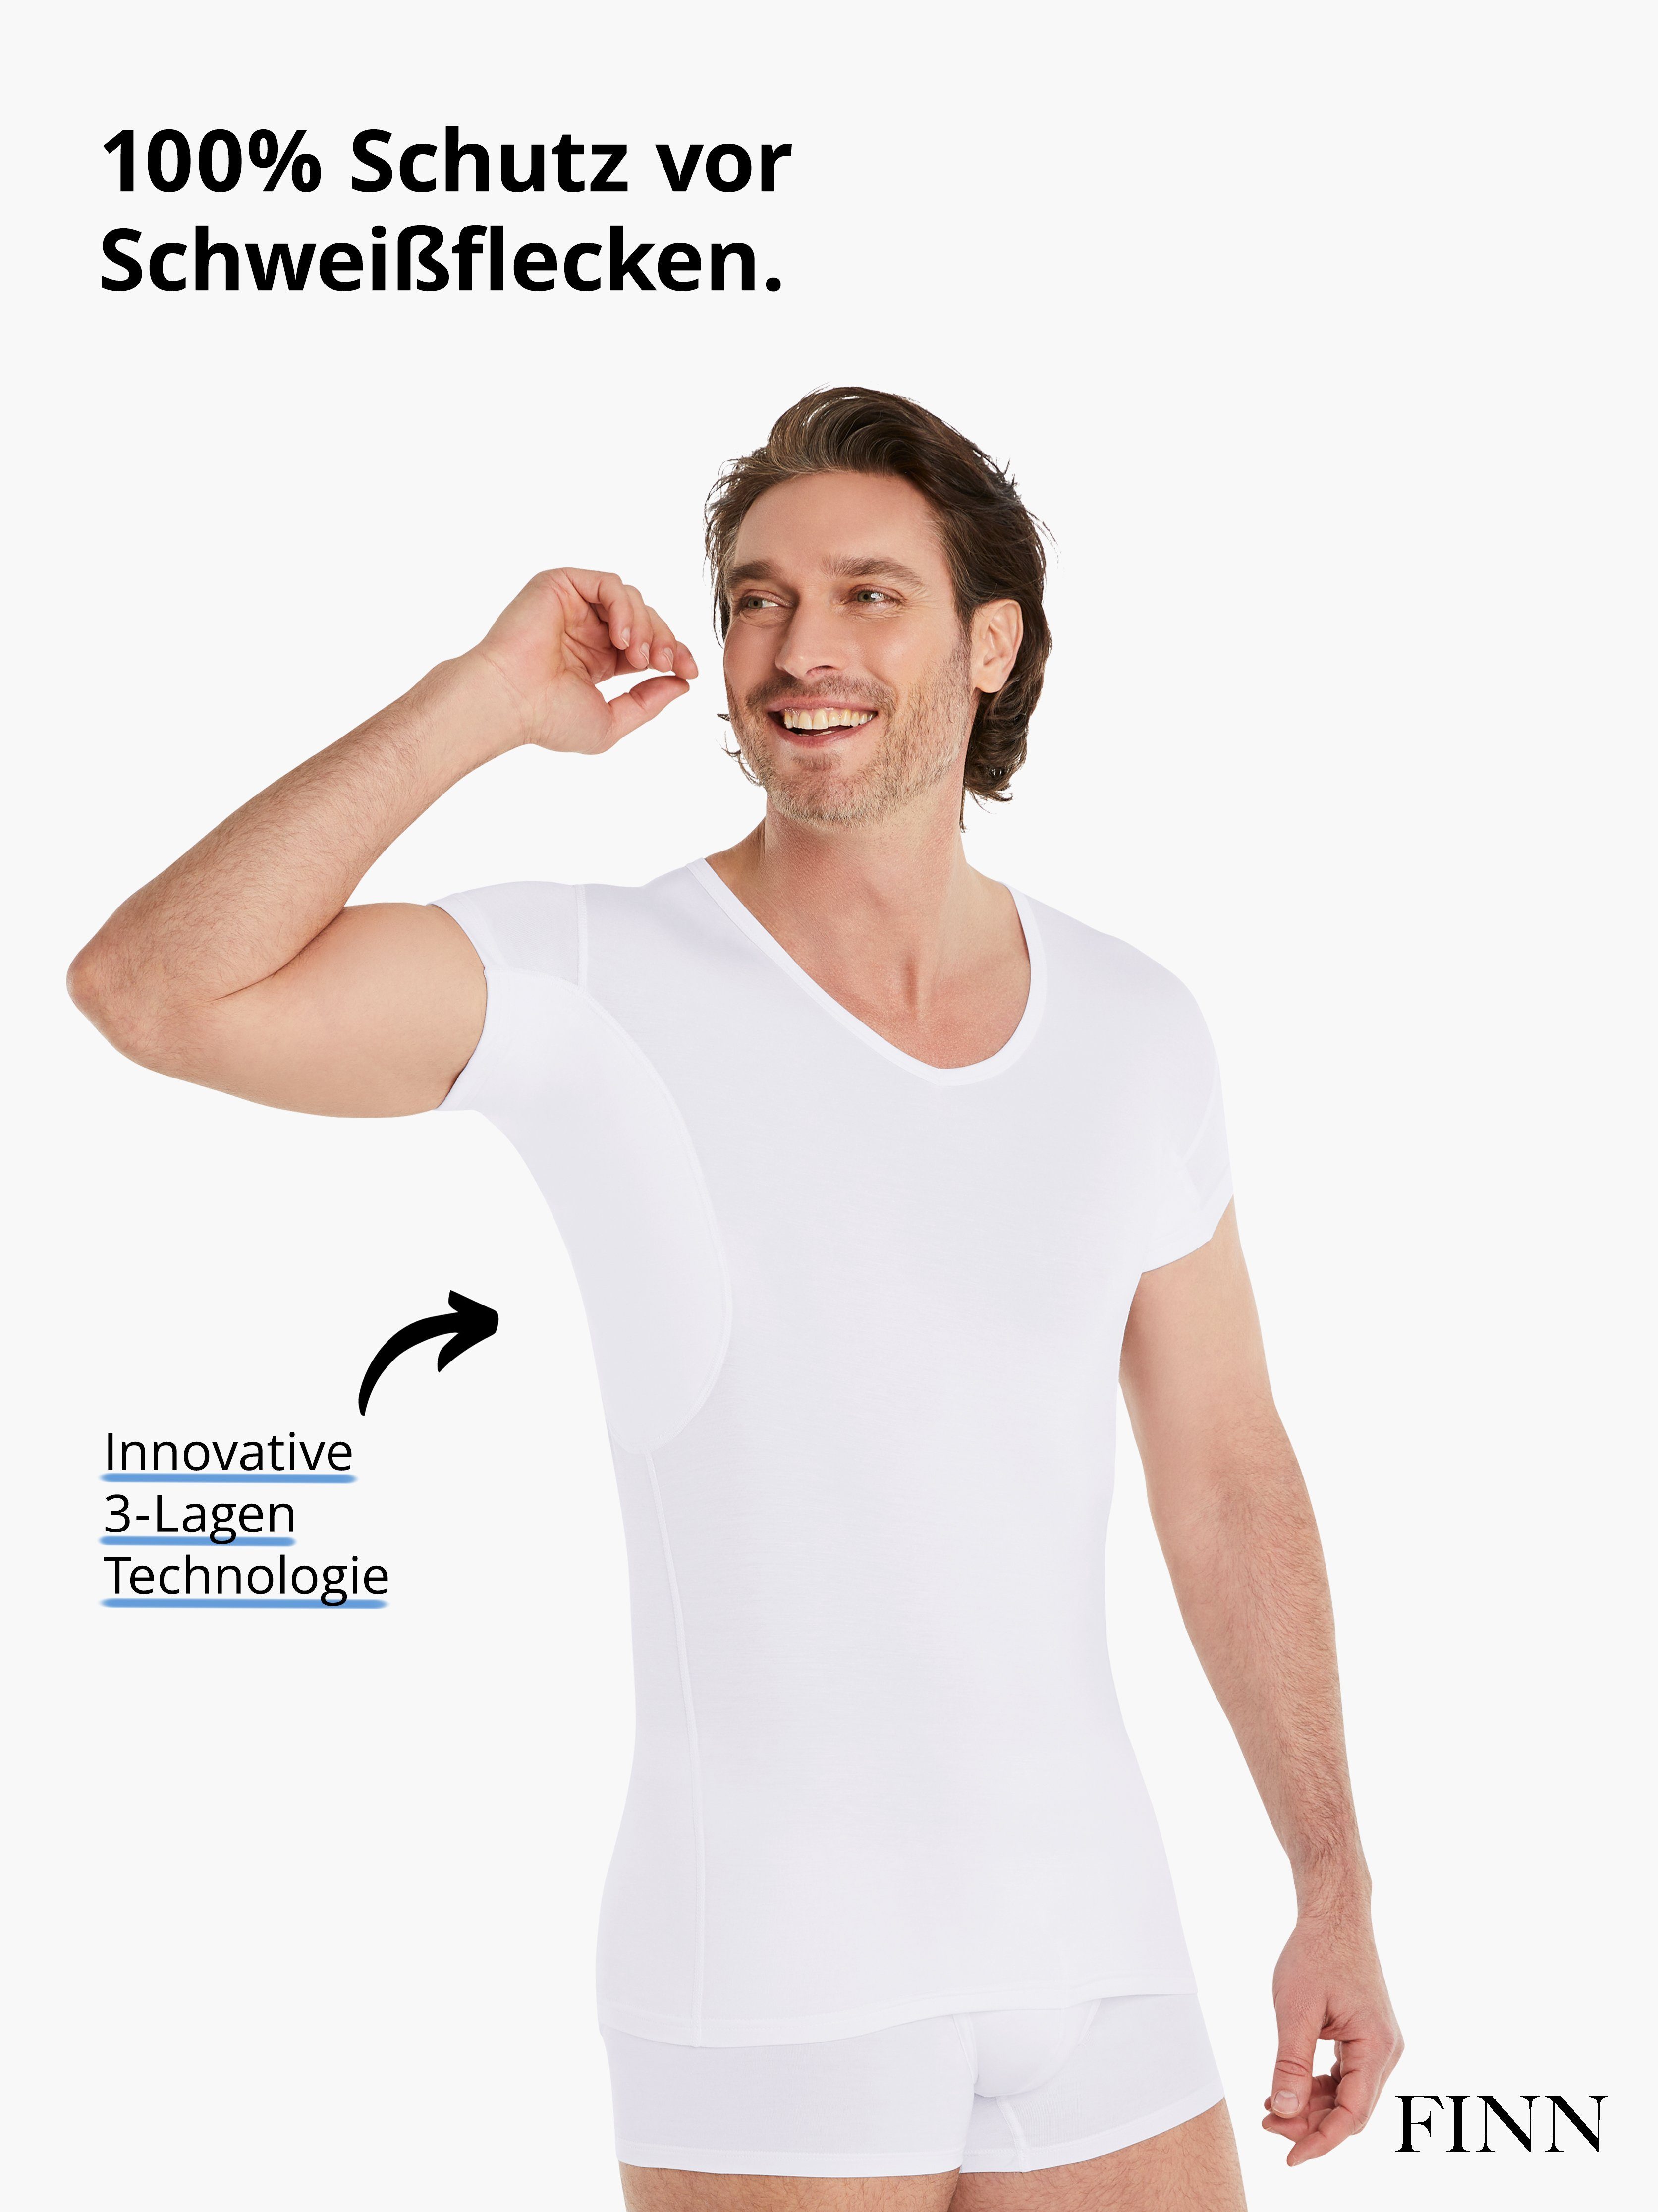 FINN Design Unterhemd Anti-Schweiß - extra kurzen Ärmeln Ärmel verkürztem Unterhemd mit Kurzarm-Hemden und Polo-Shirts mit Herren unter Perfekt